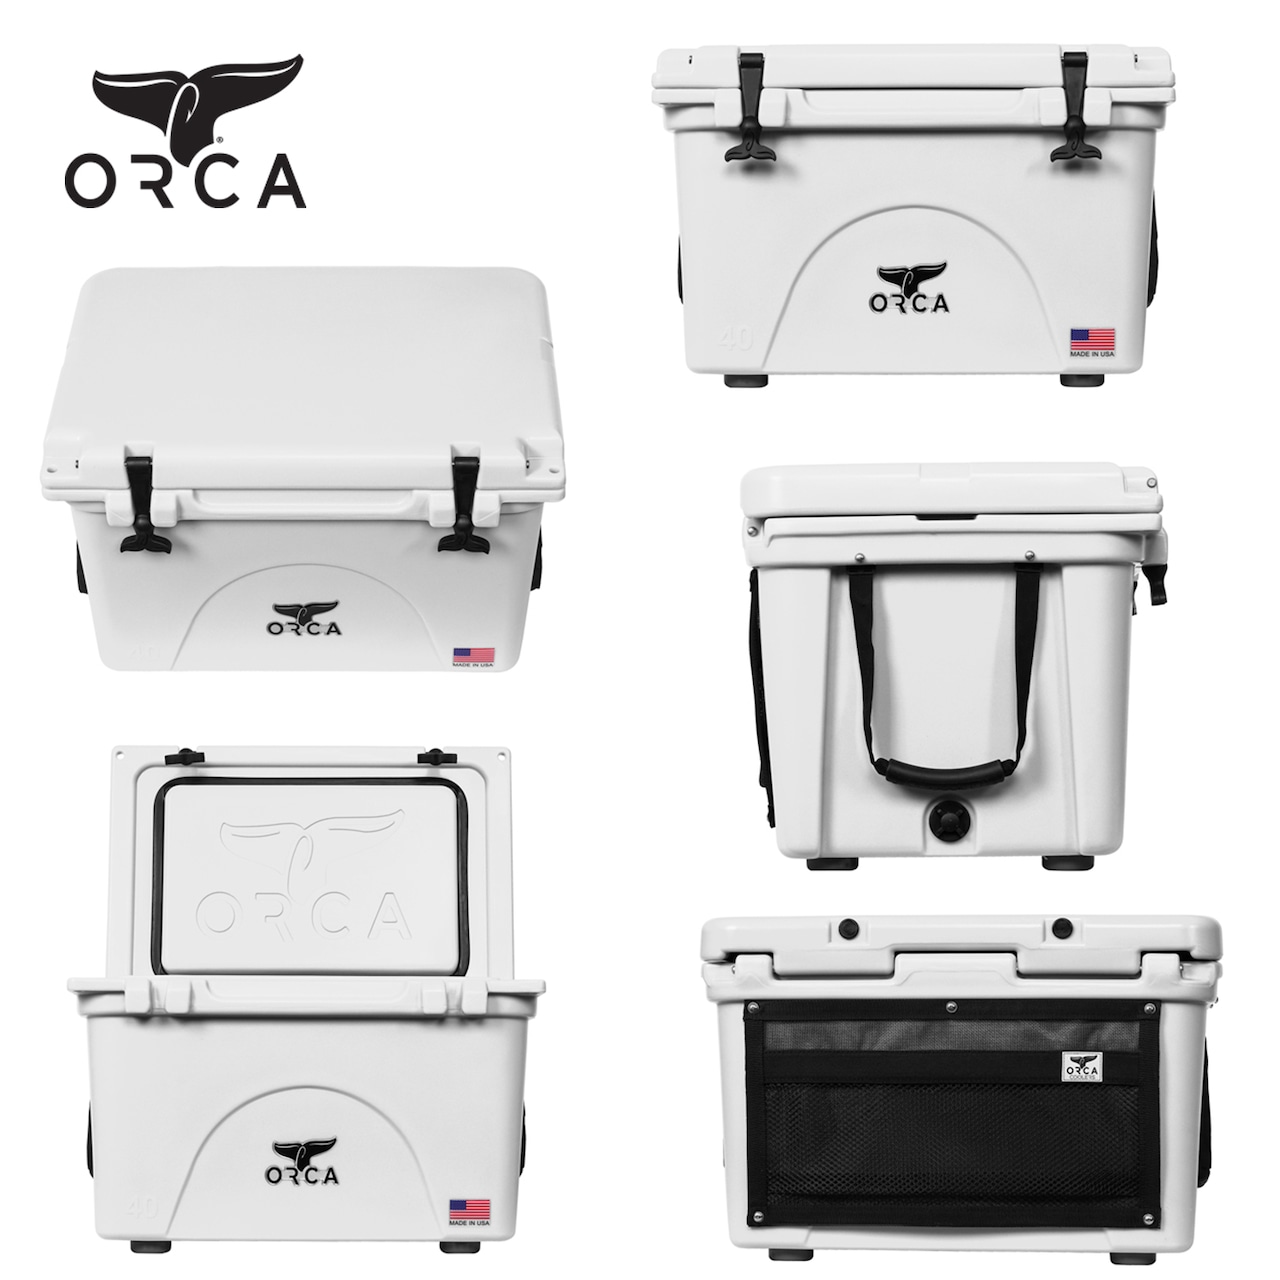 ORCA Coolers 40 Quart オルカ クーラー ボックス キャンプ用品 アウトドア キャンプ グッズ 保冷 クッキング ドリンク オルカクーラーズジャパン